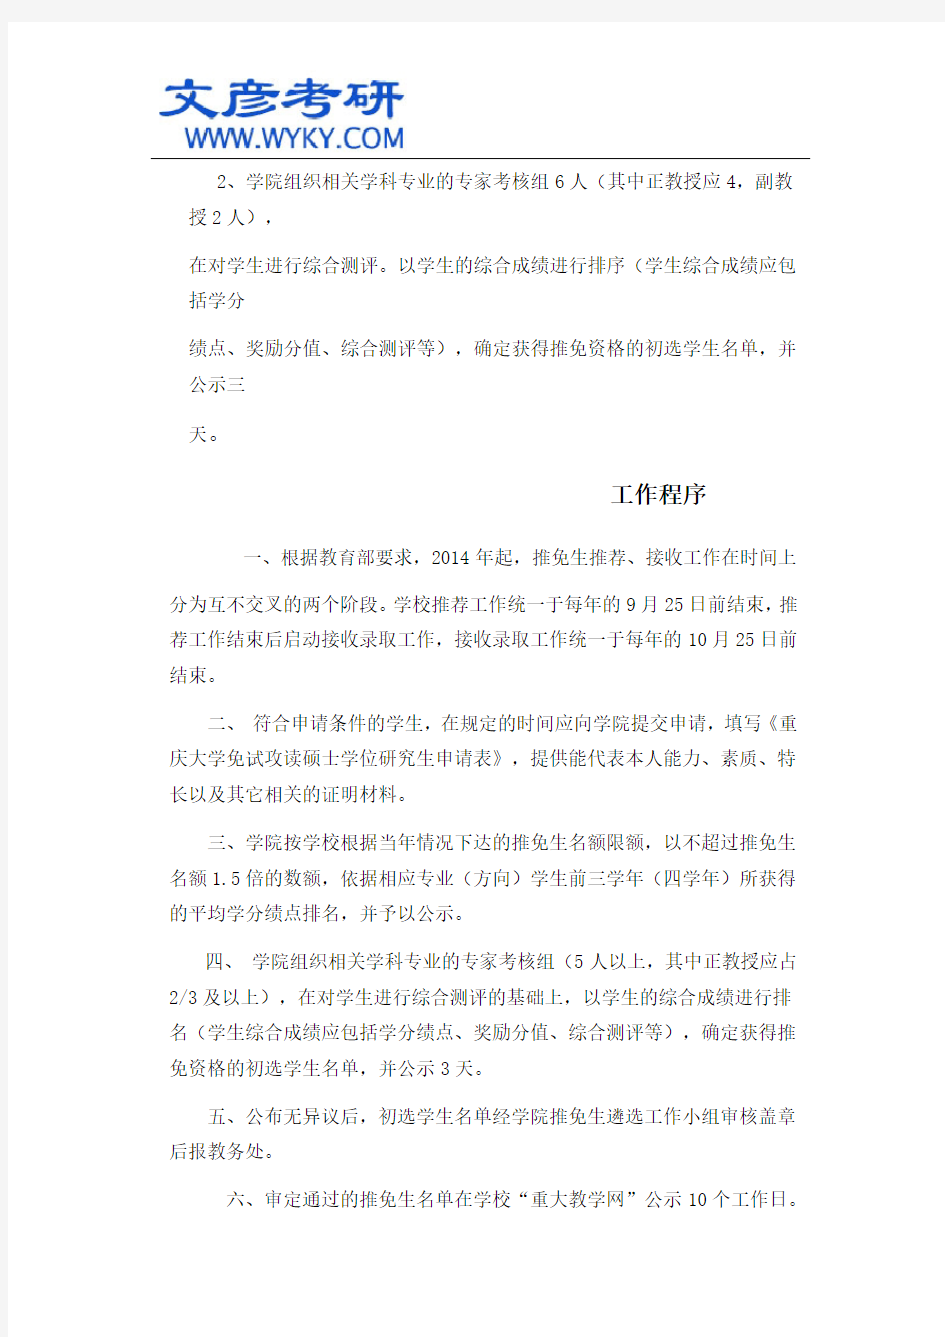 重庆大学体育学院2015年推免研究生工作细则_重庆大学研究生院